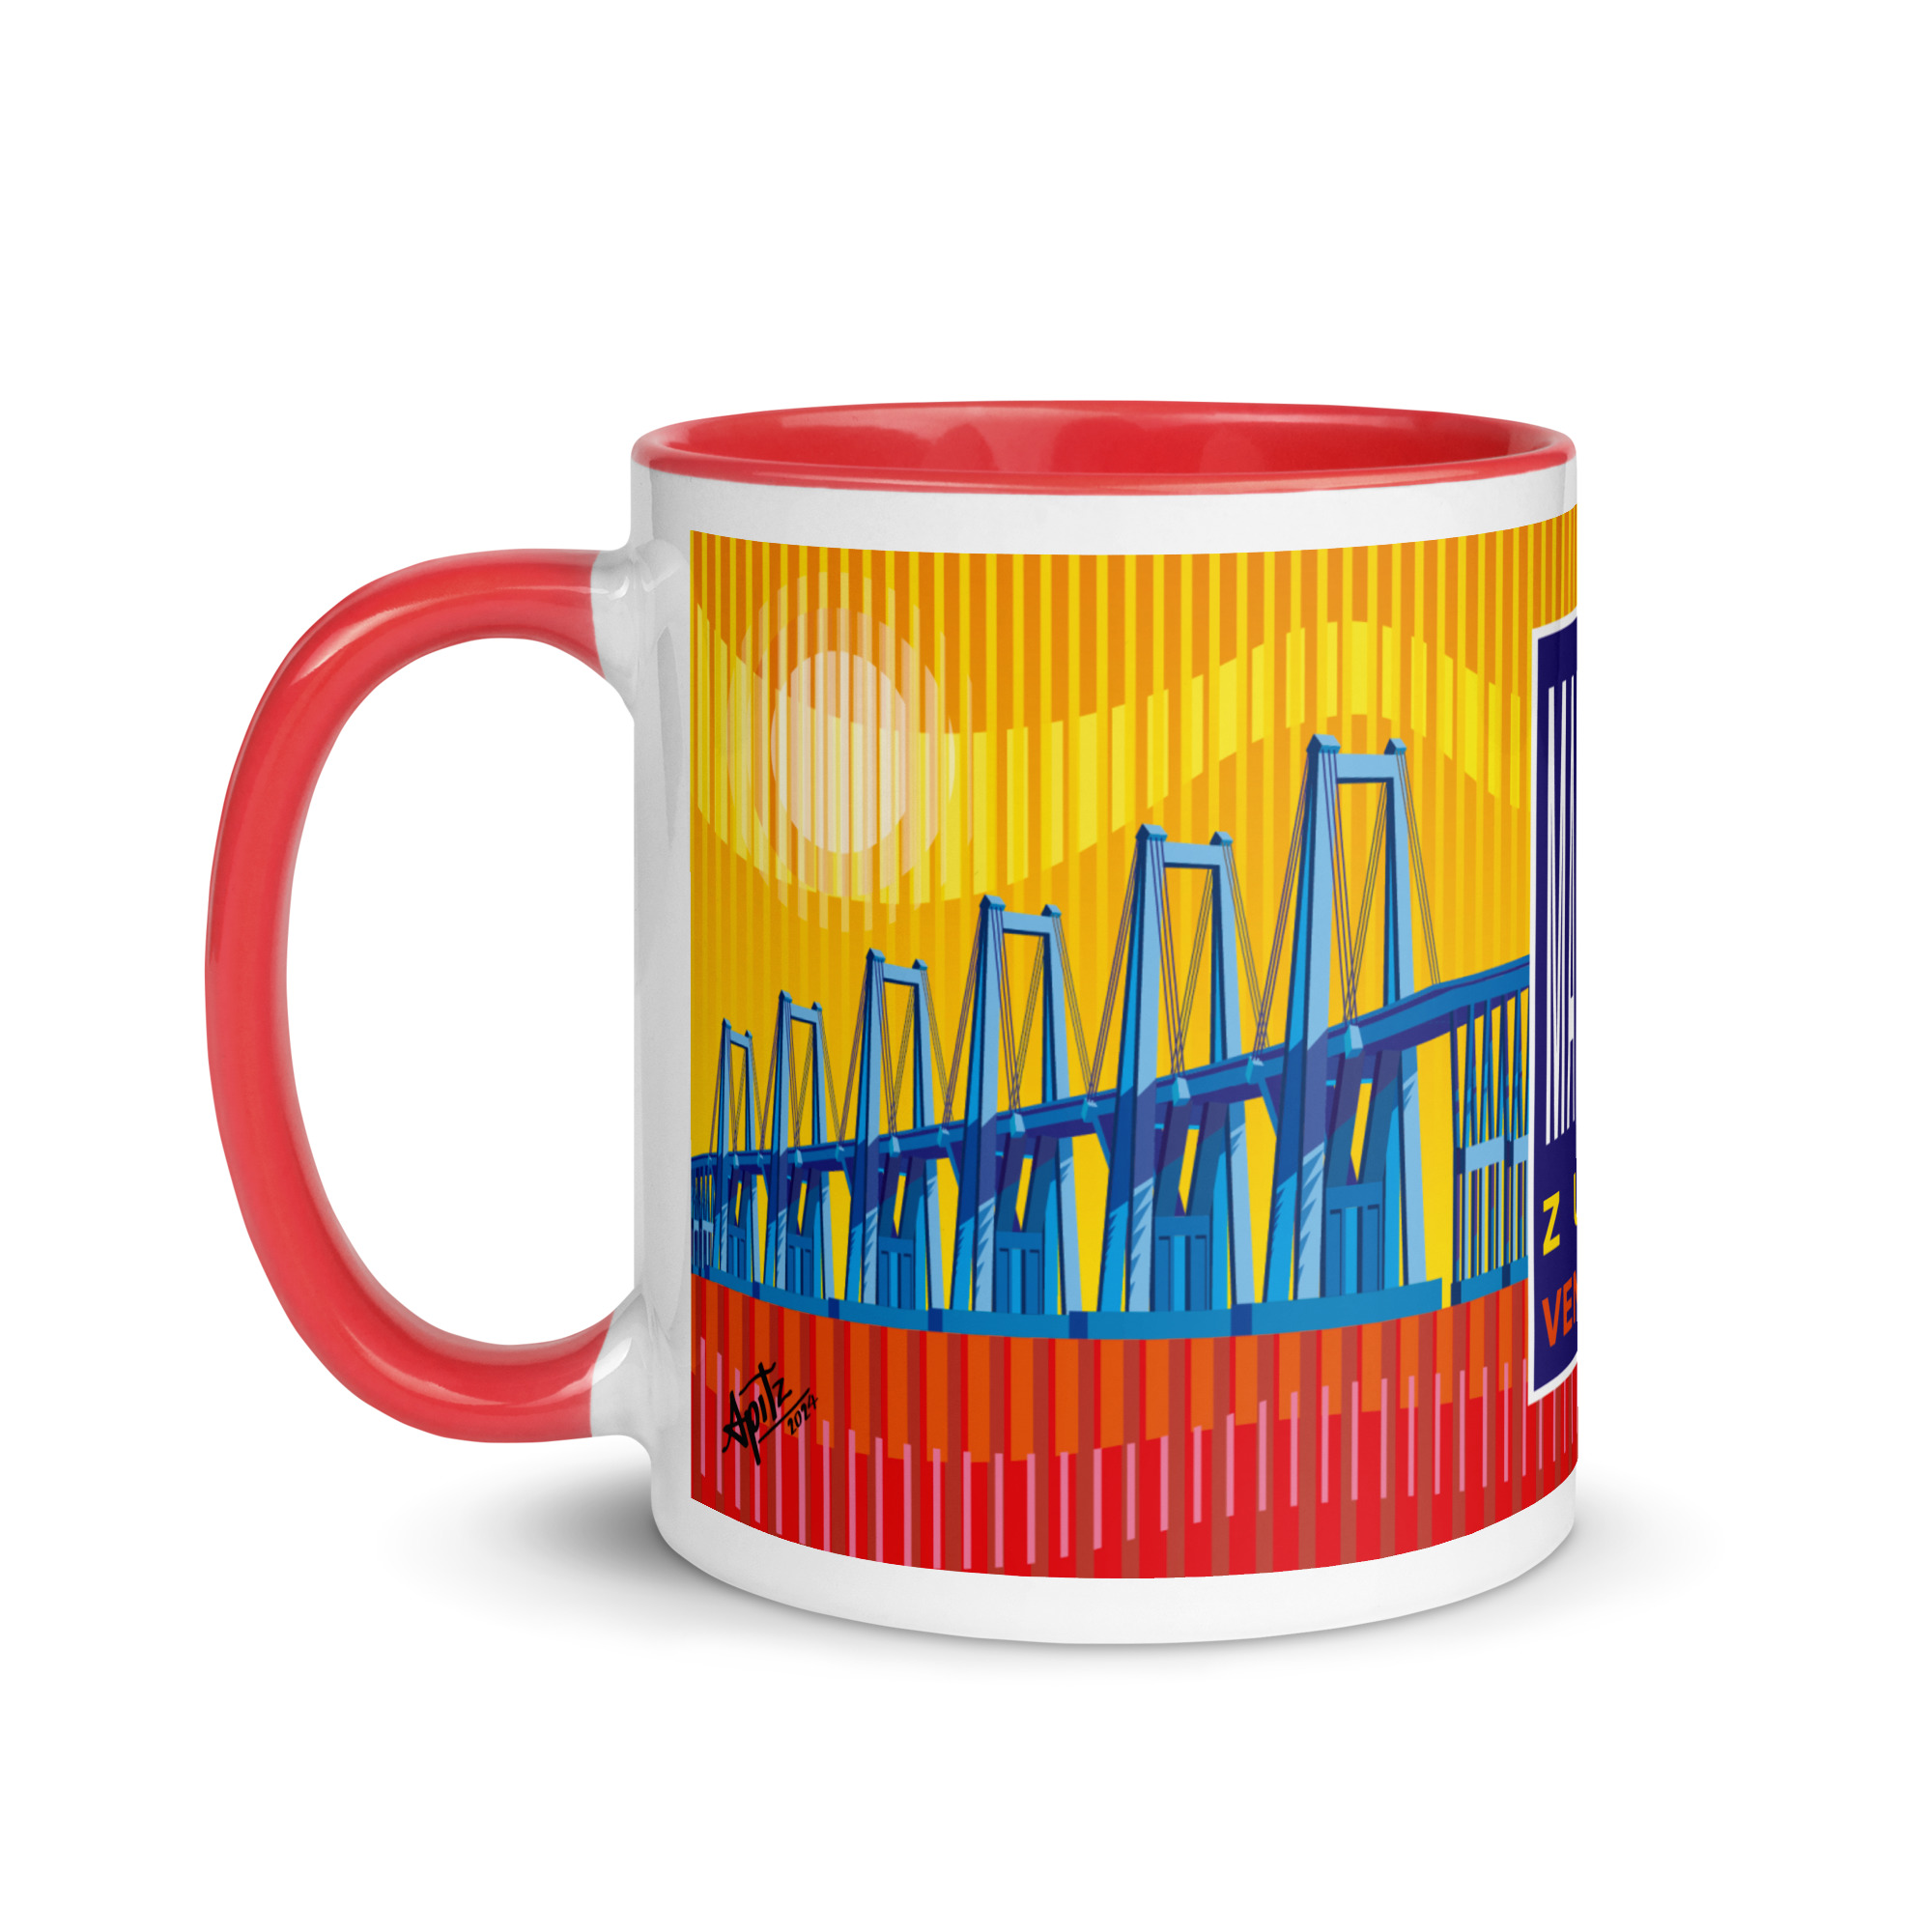 white-ceramic-mug-Maracaibo Lake Mug with-color-inside-red-11-oz-left-66391a550553a-1.jpg